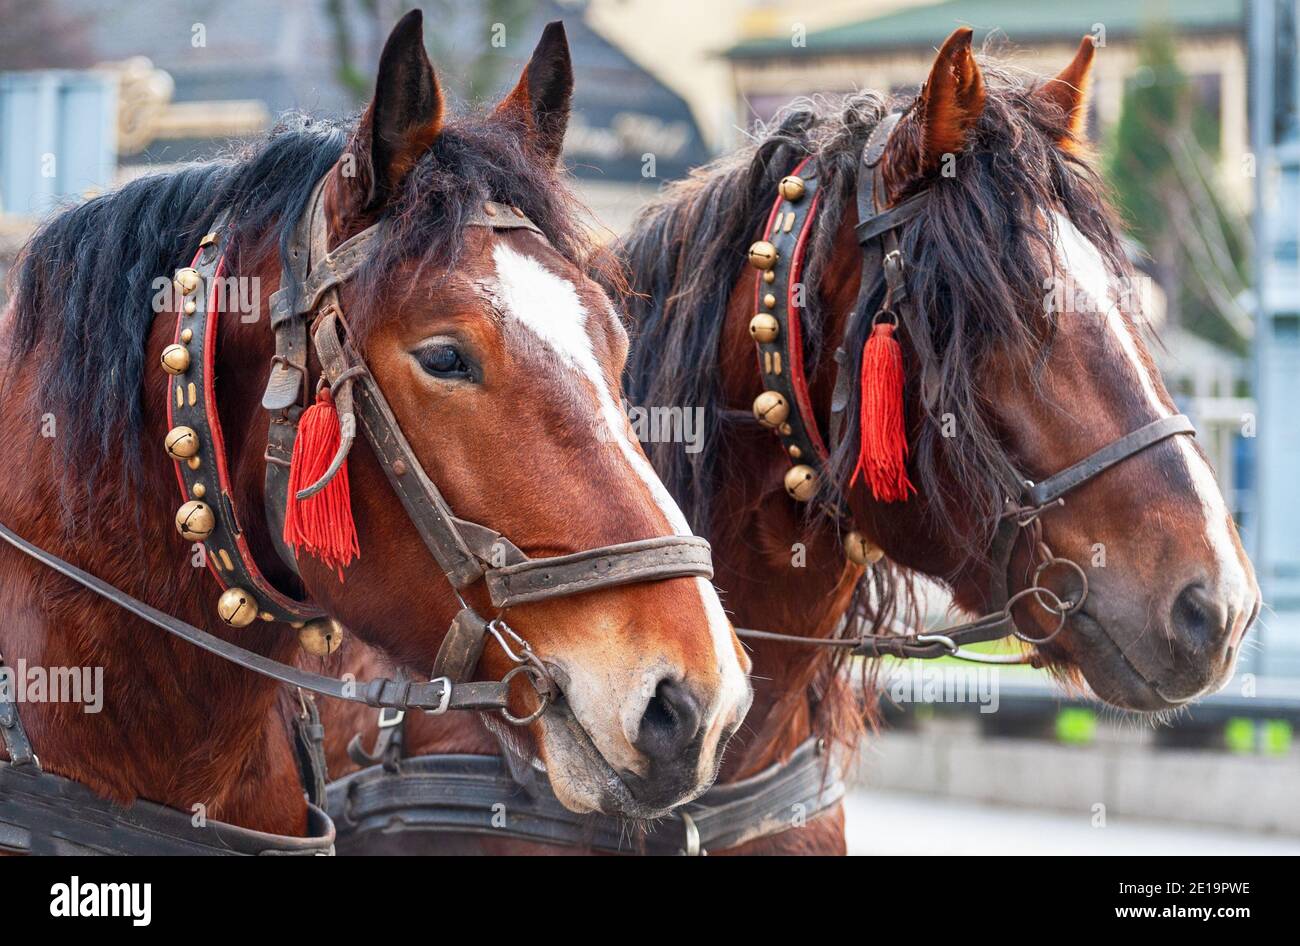 Ein Paar Pferde in einem Geschirr mit Glocken. Ausflug für Touristen  Stockfotografie - Alamy